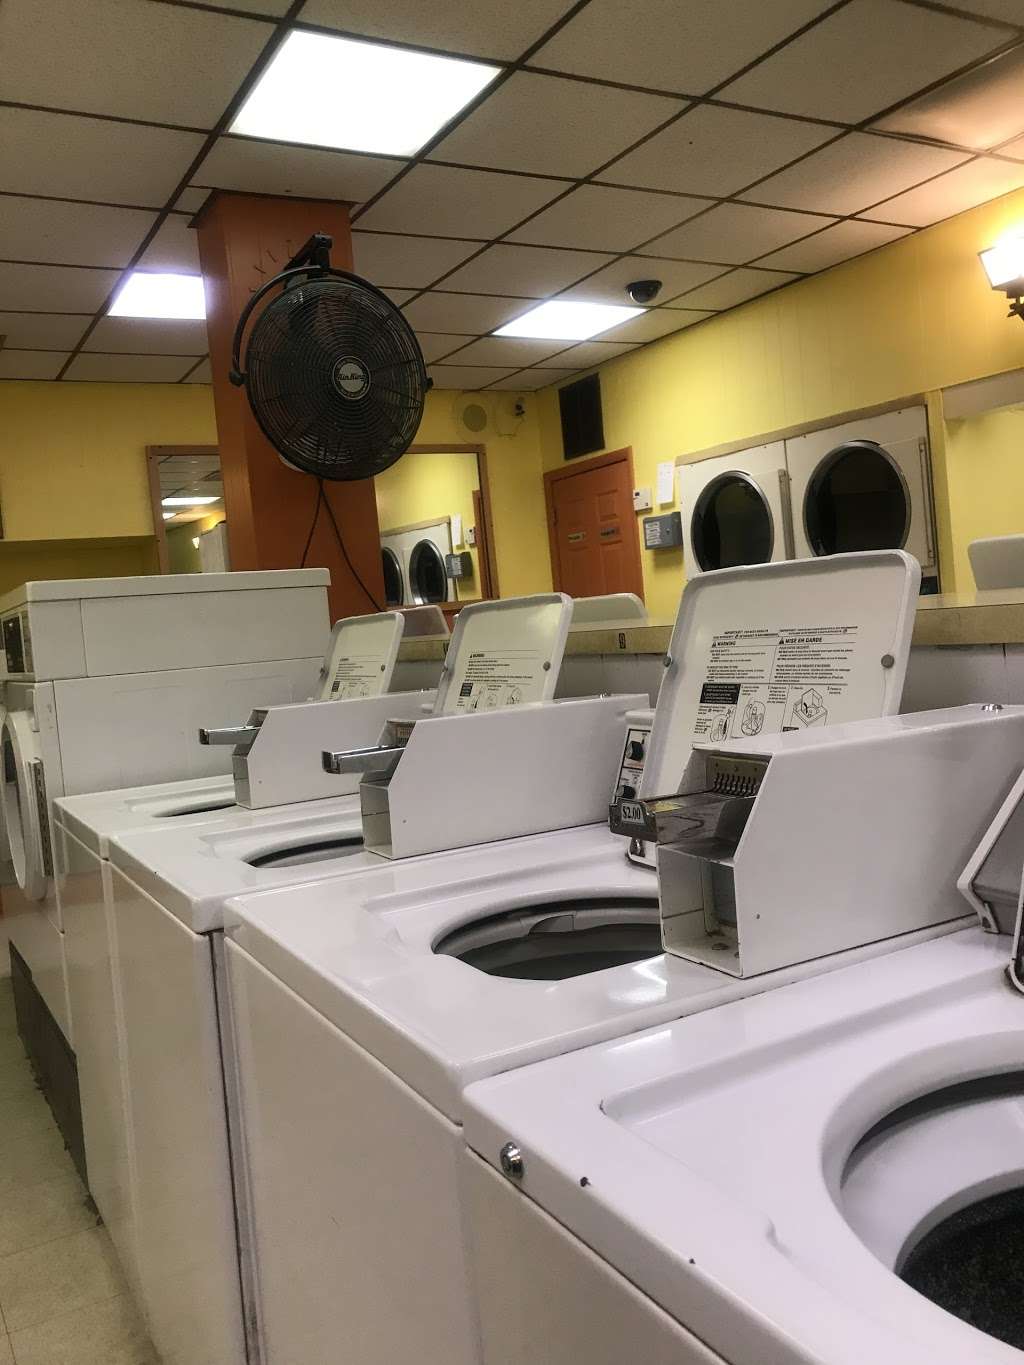 Laundromat | 6503 W Pershing Rd, Berwyn, IL 60402, USA